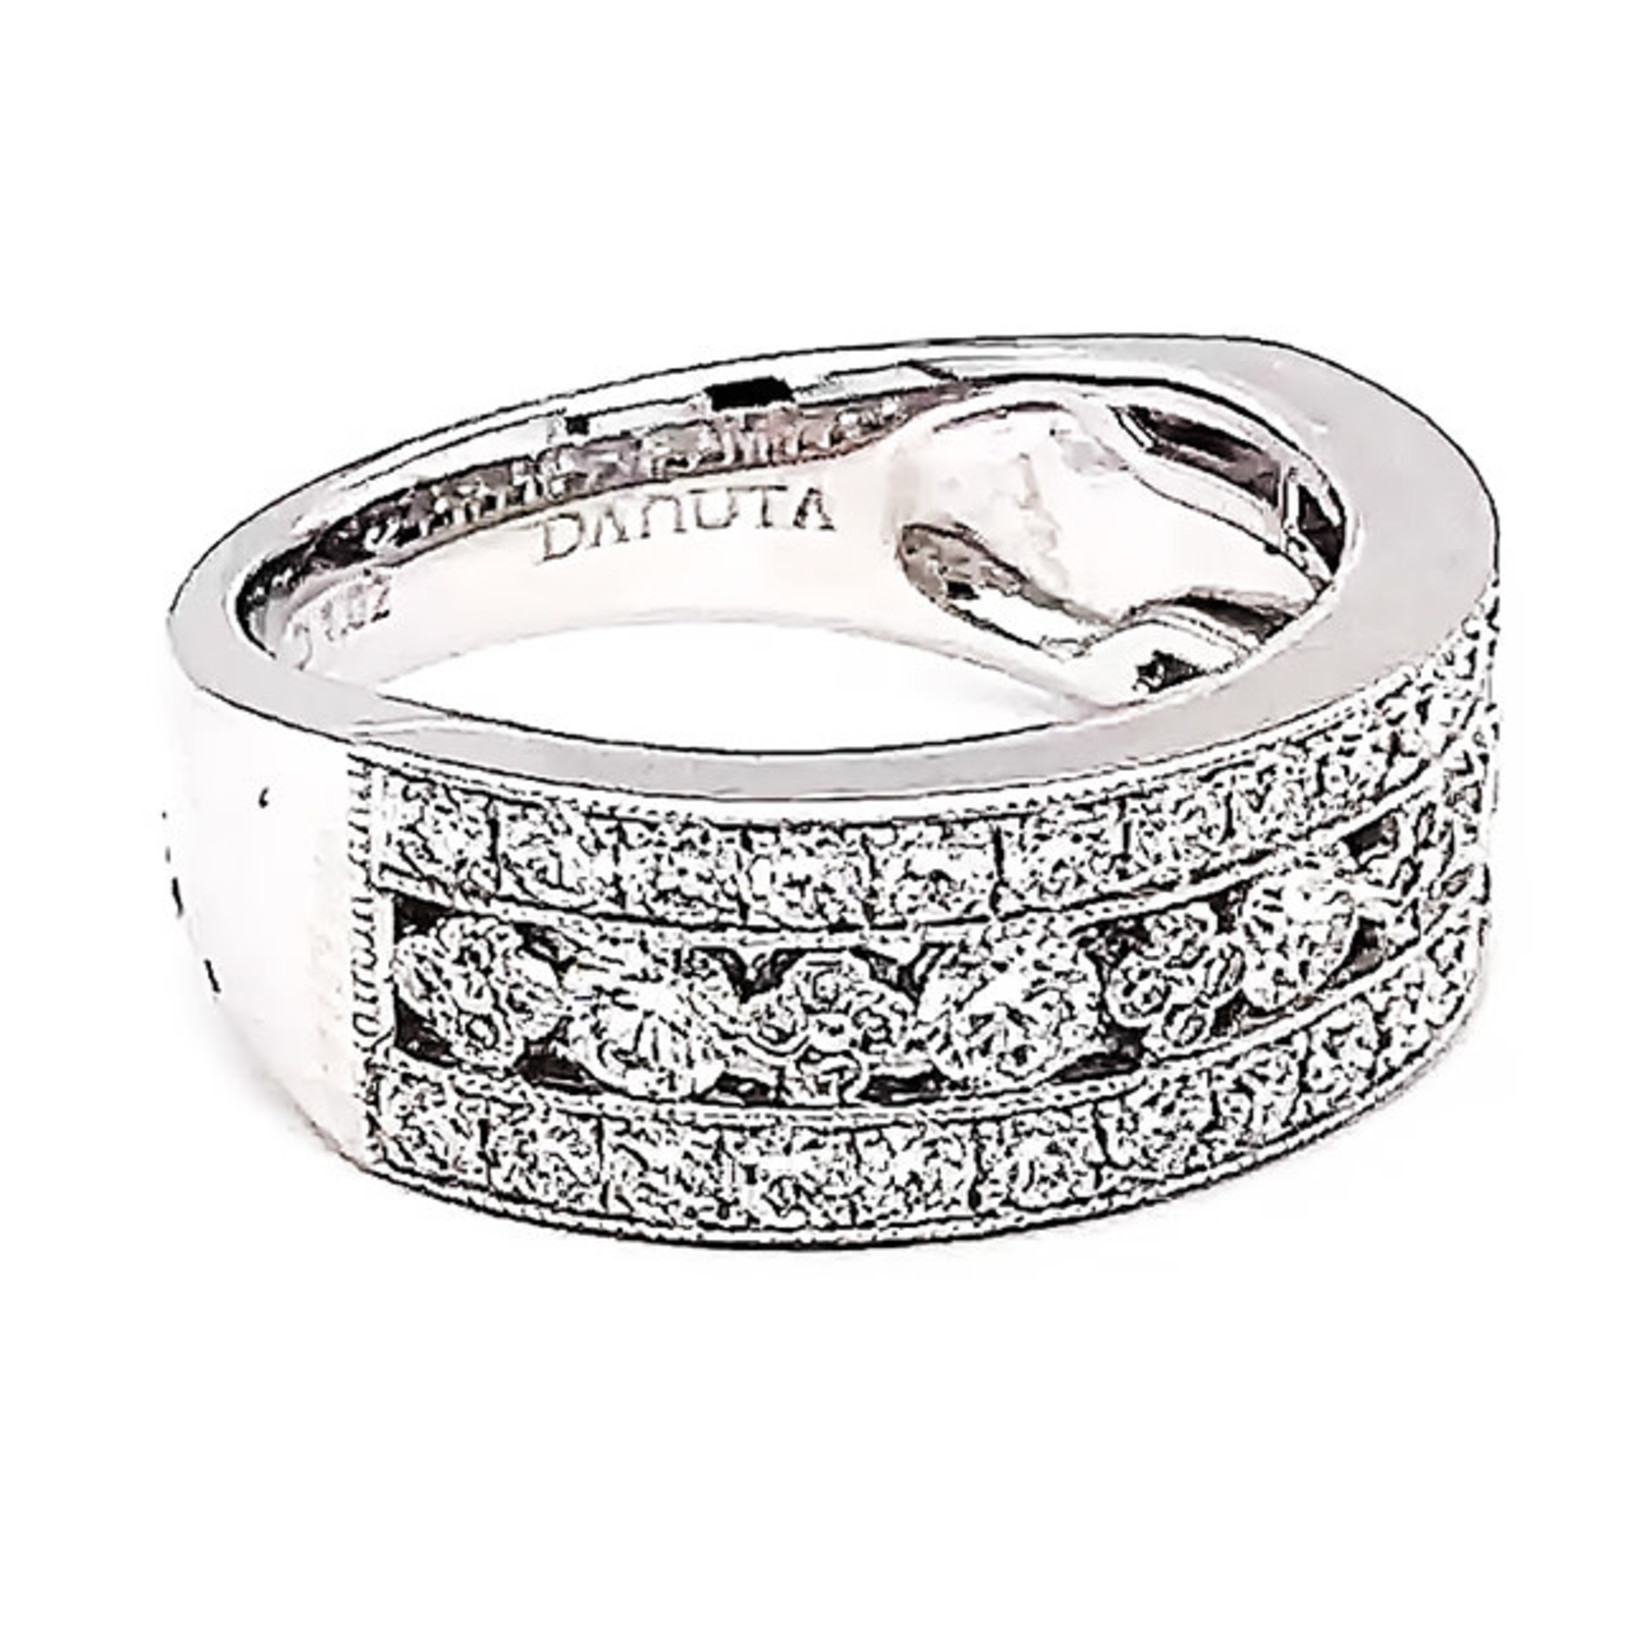 Jewelry By Danuta - Platinum Drawer Diamonds 1.02ct. & Platinum Band,1.02ct Dia